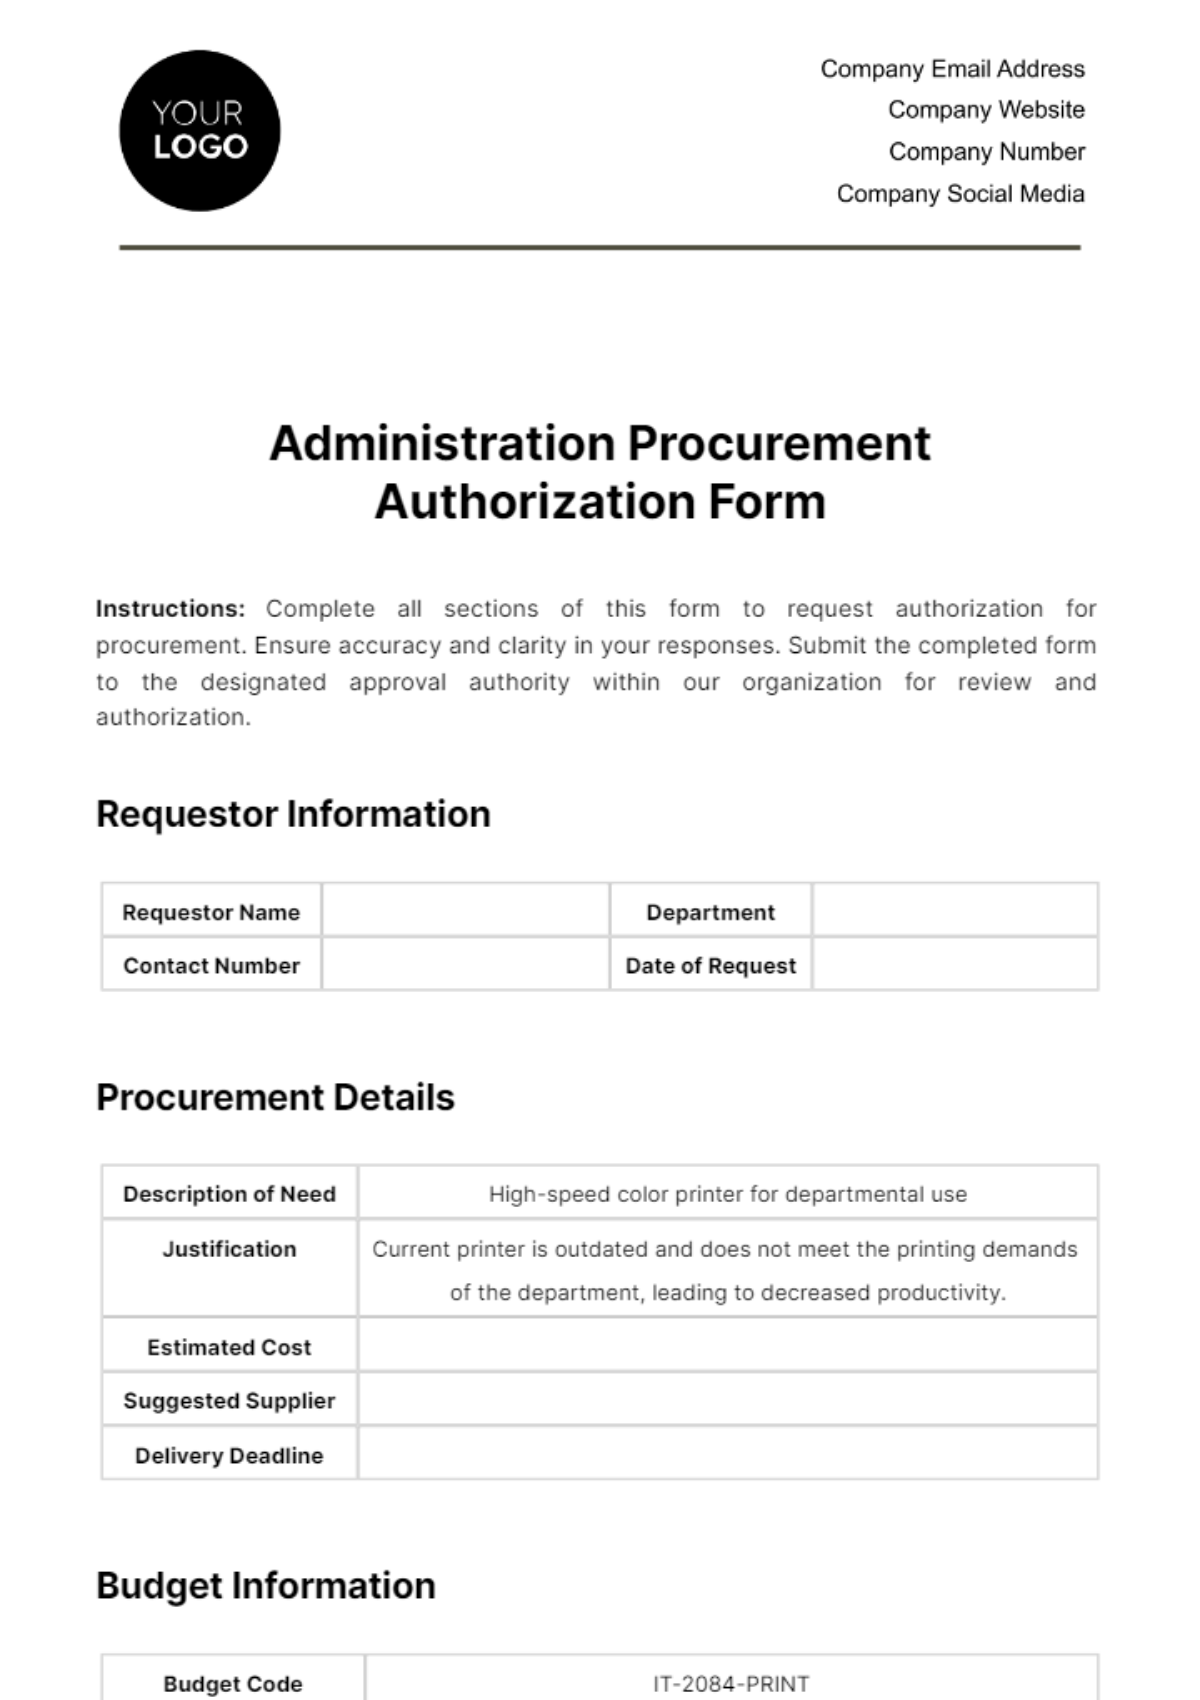 Administration Procurement Authorization Form Template